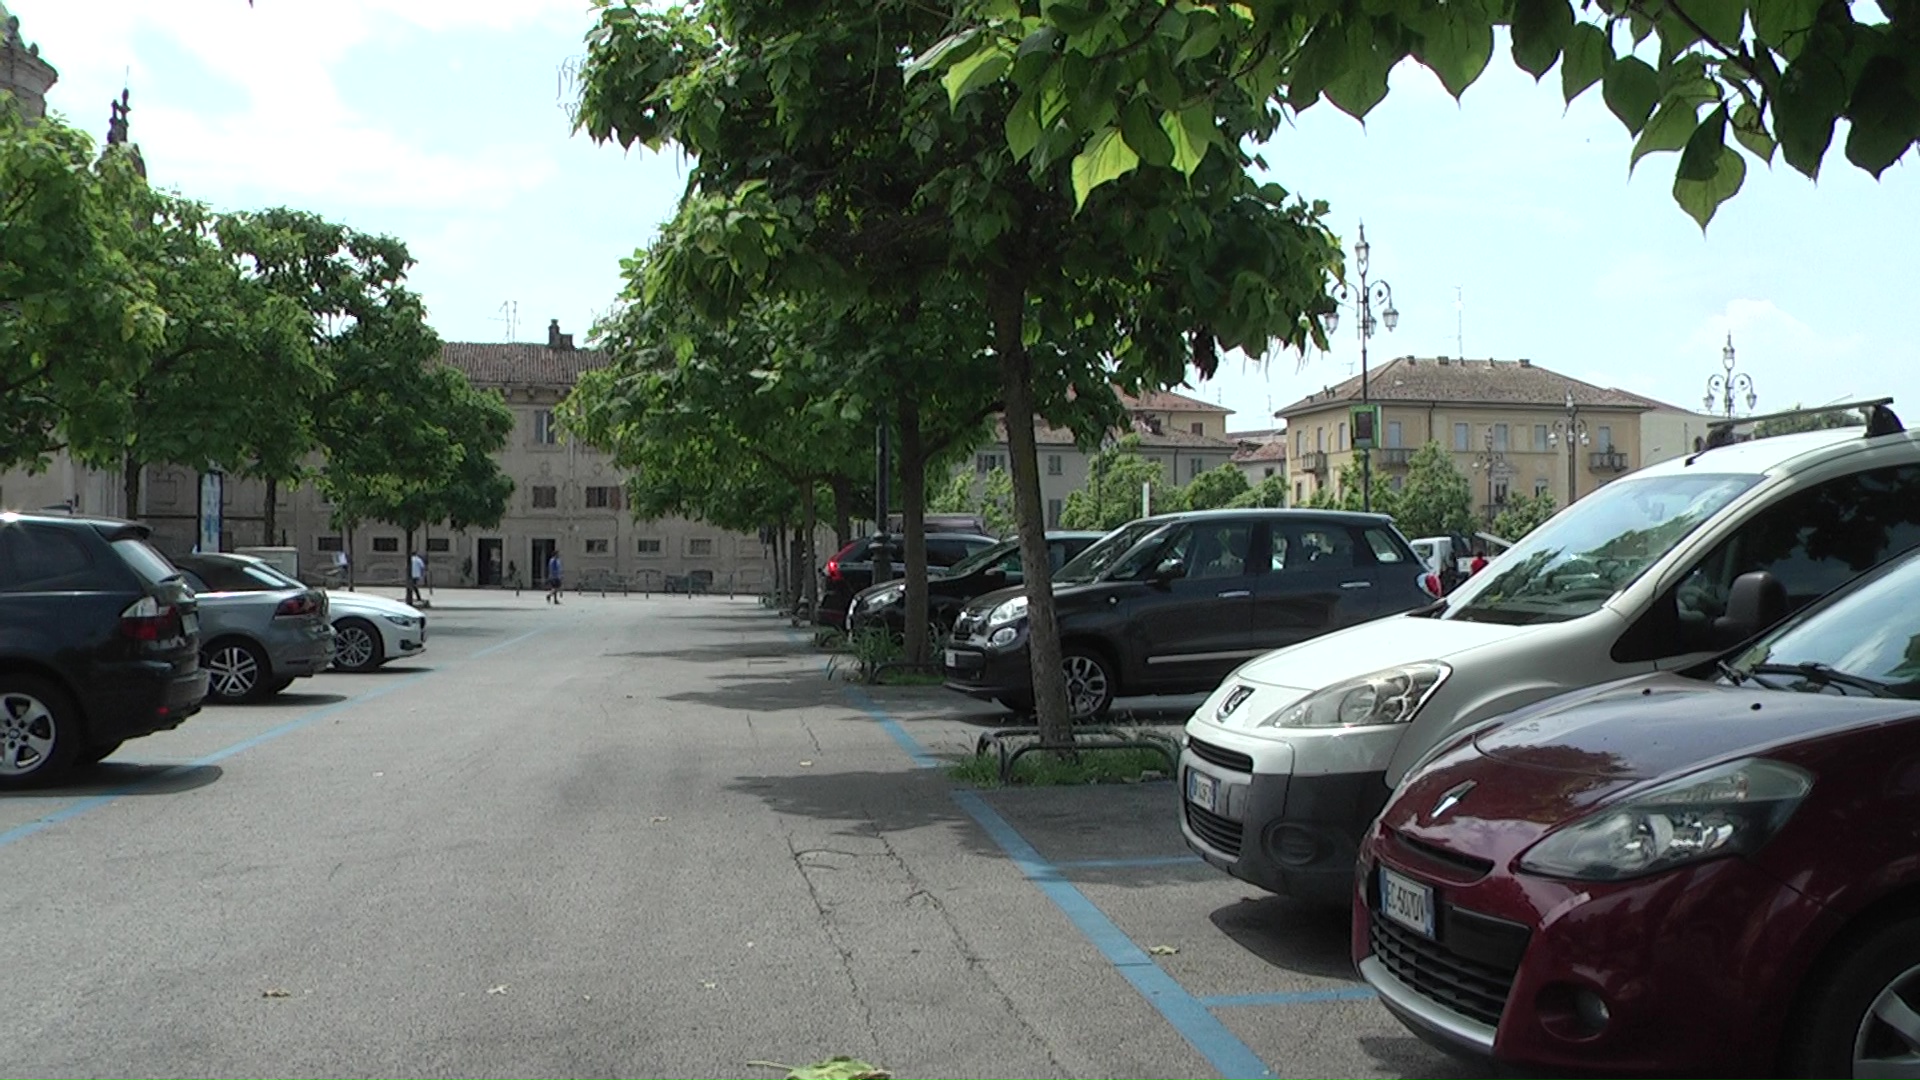 Casale Monferrato. Zone blu: sospensione del pagamento della sosta dall’8 al 19 agosto